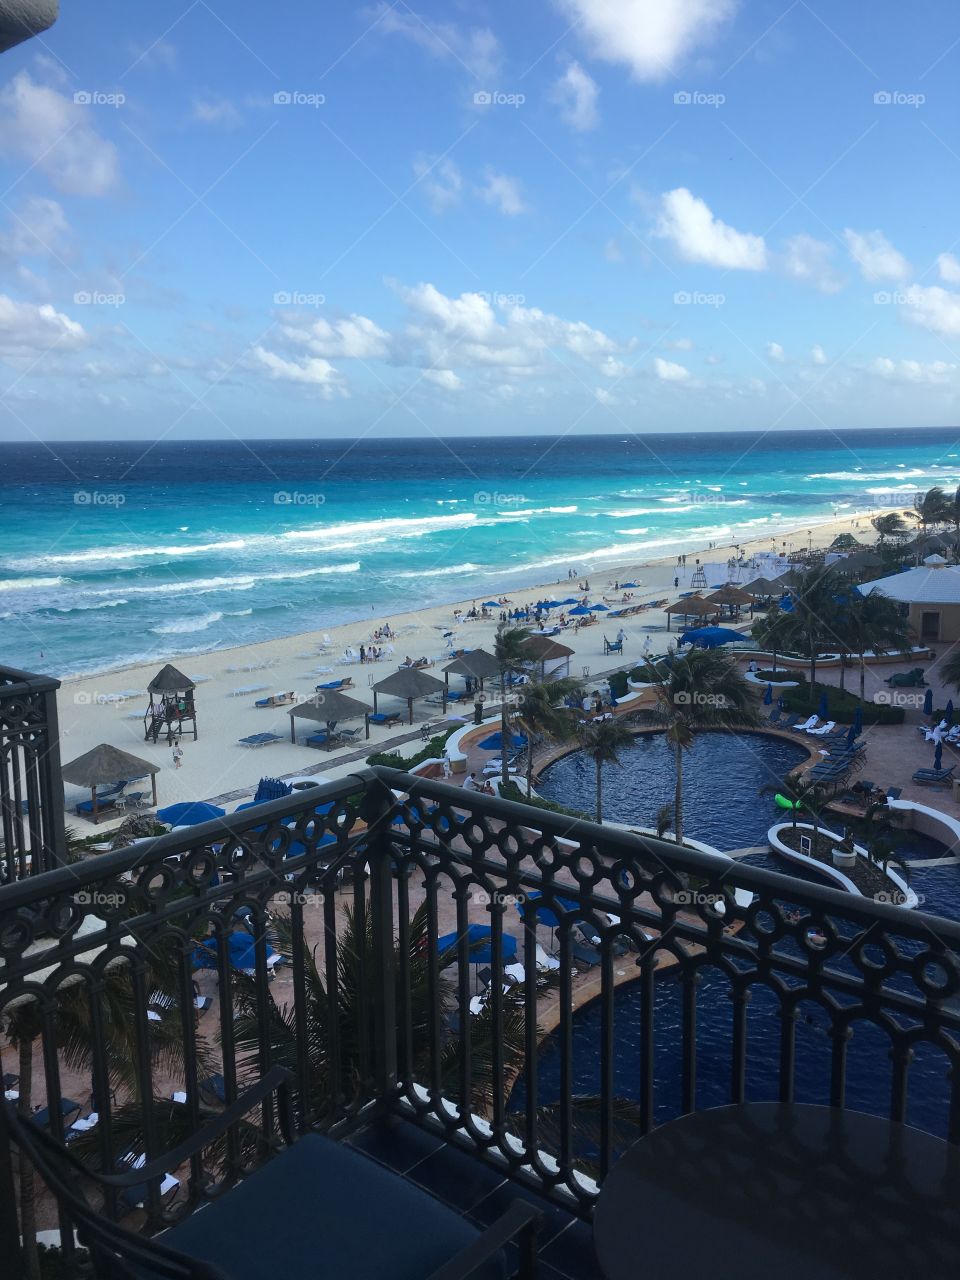 Ritz Carlton of Cancun beach view 